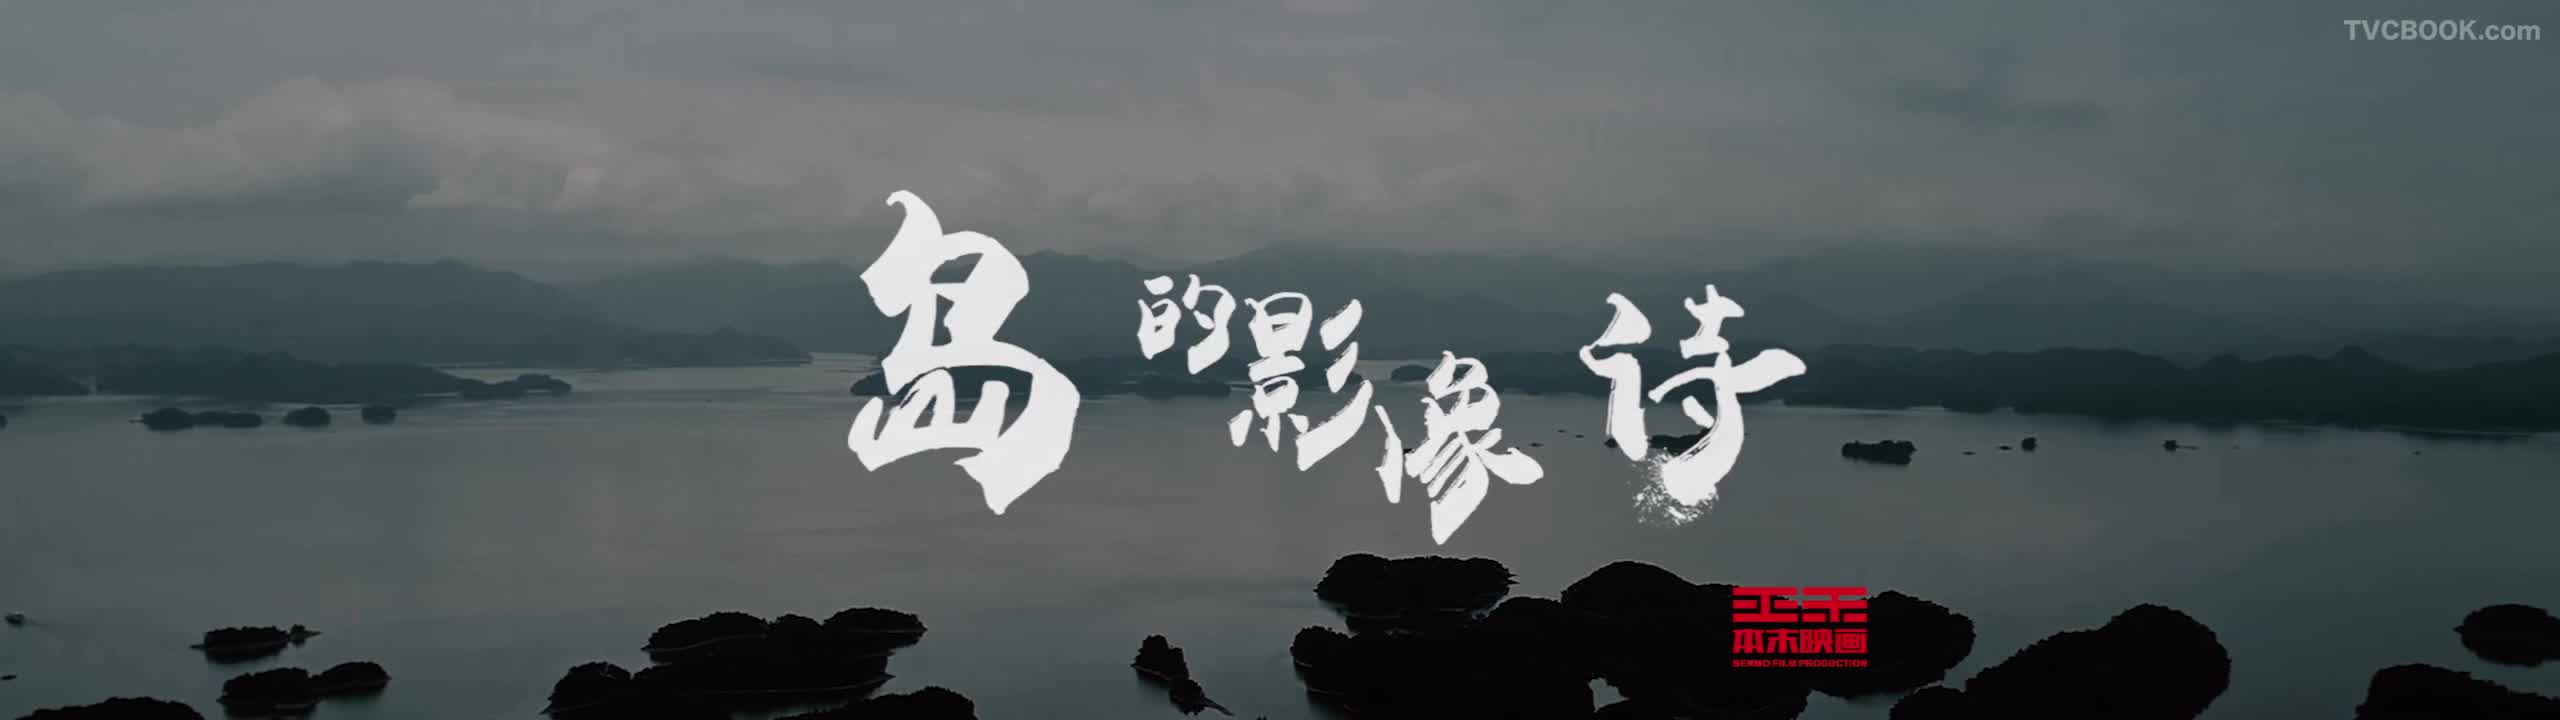 千岛湖旅游系列宣传片《岛的影像诗》